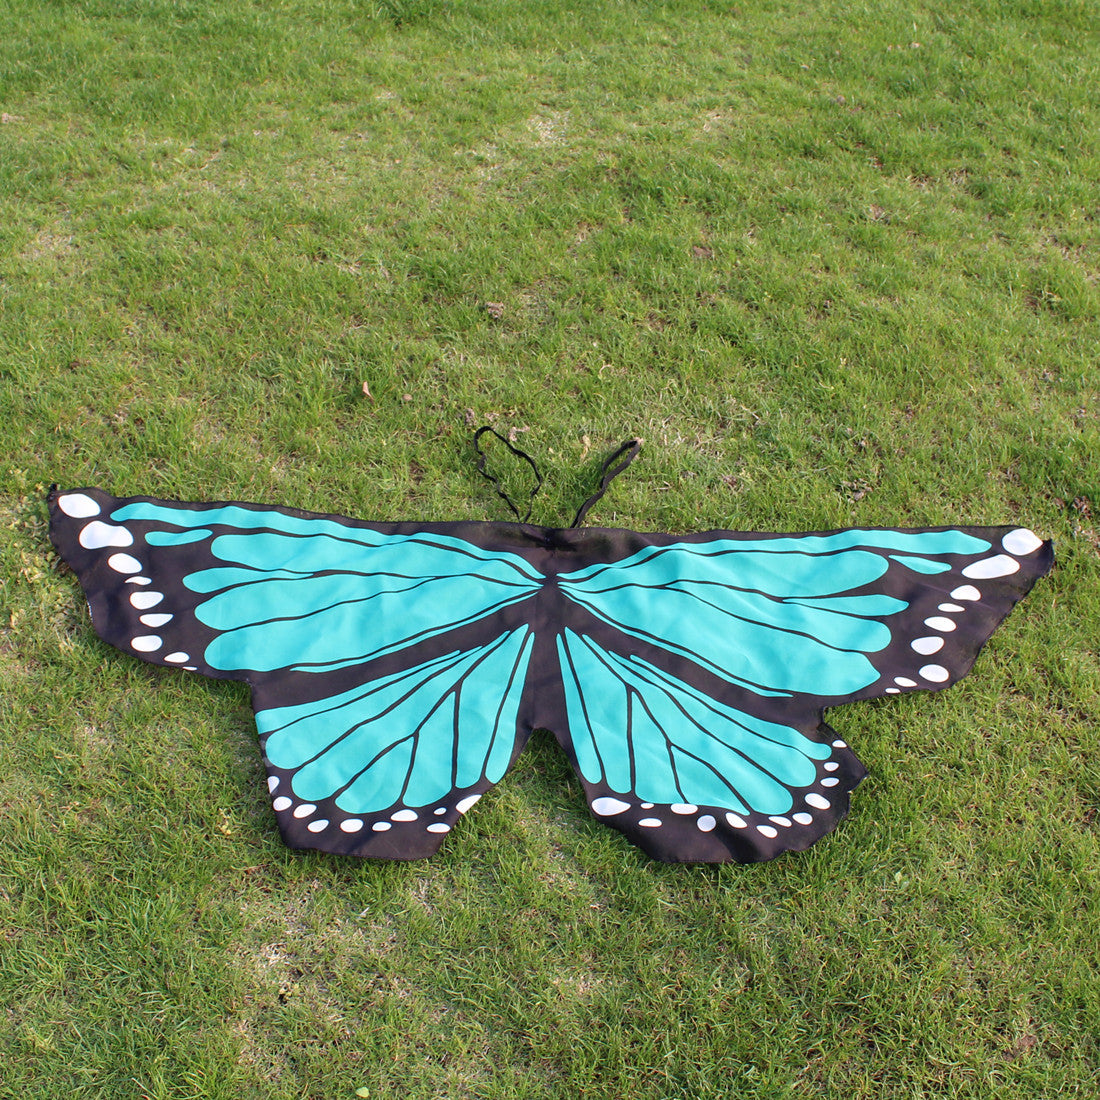 Butterfly Wings Dress Up